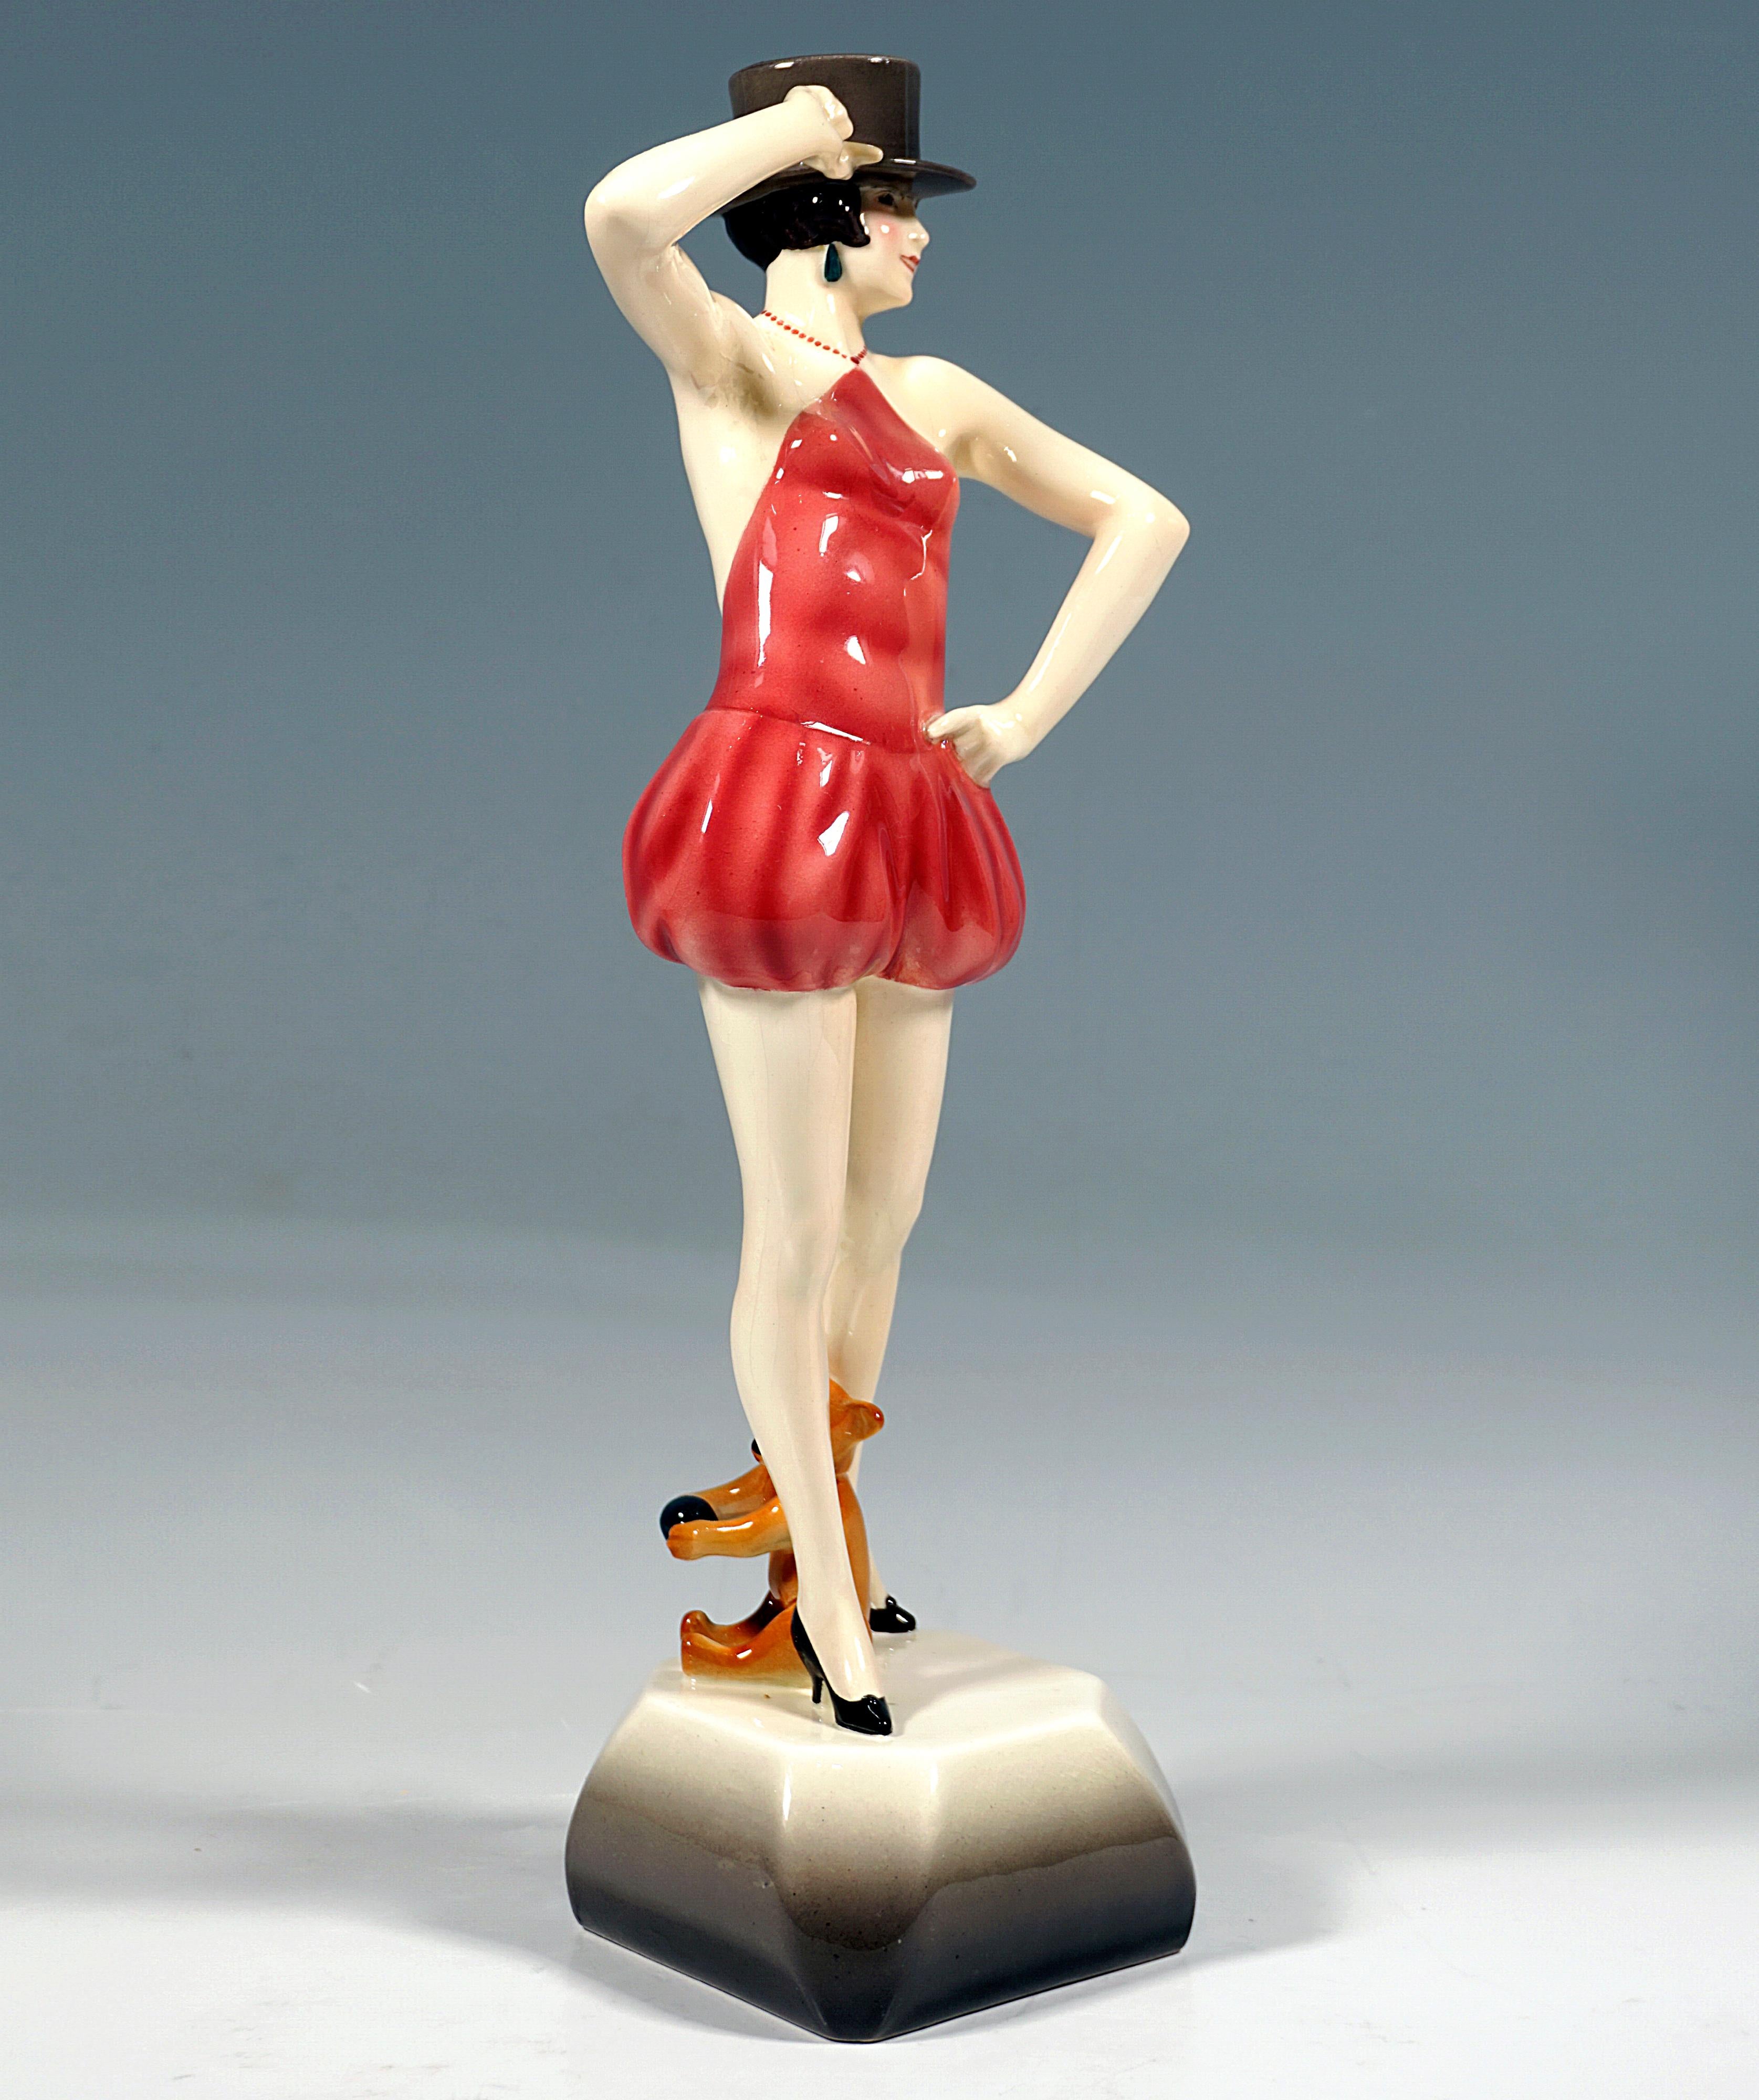 Très rare figurine en céramique viennoise de la fin des années 1920 :
Jeune danseuse fantaisiste en costume moulant avec un haut sans épaules et dos nu retenu par un collier de perles et un pantalon court de harem, talons noirs aux pieds, posant